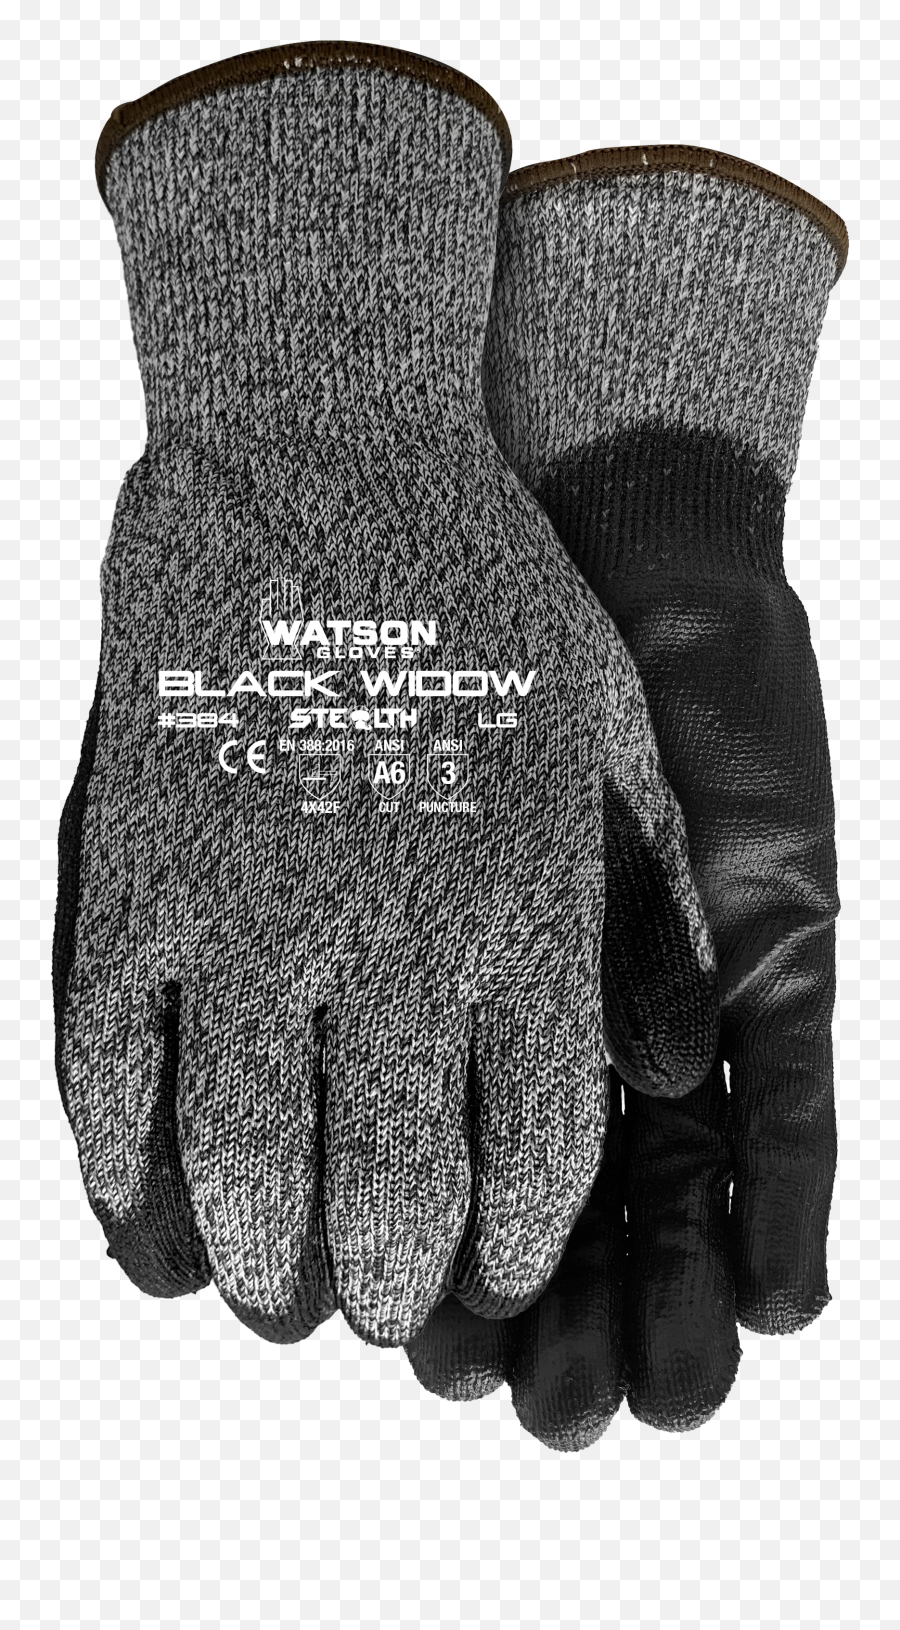 384 Stealth Black Widow - Watson Gloves Safety Glove Png,Black Widow Transparent